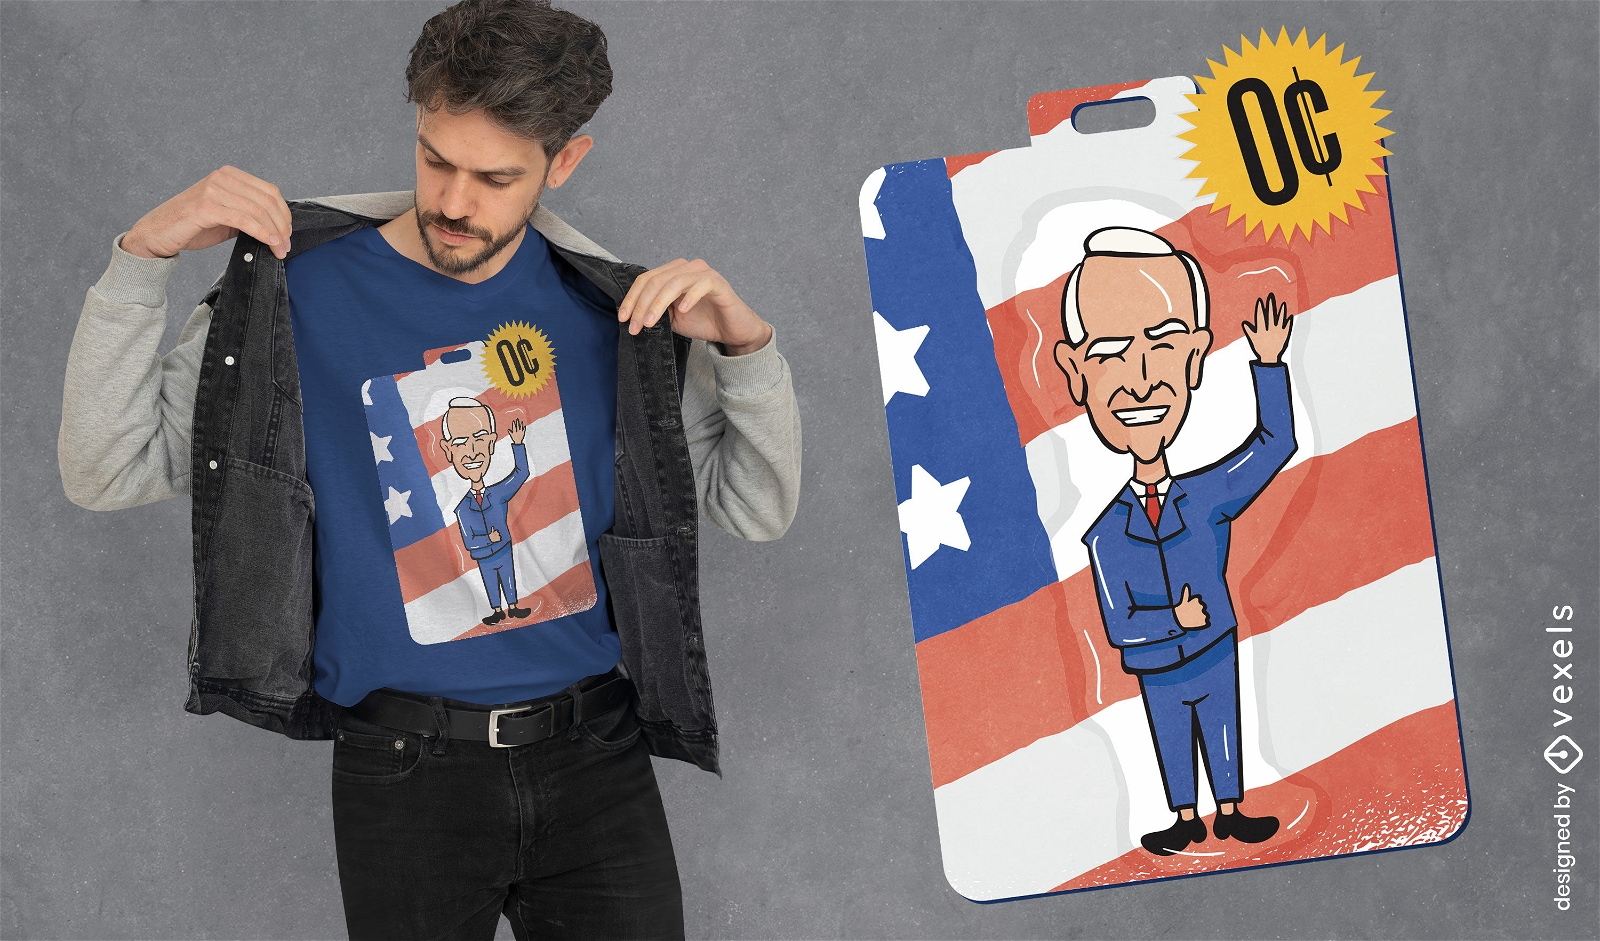 Joe Biden politician toy t-shirt design